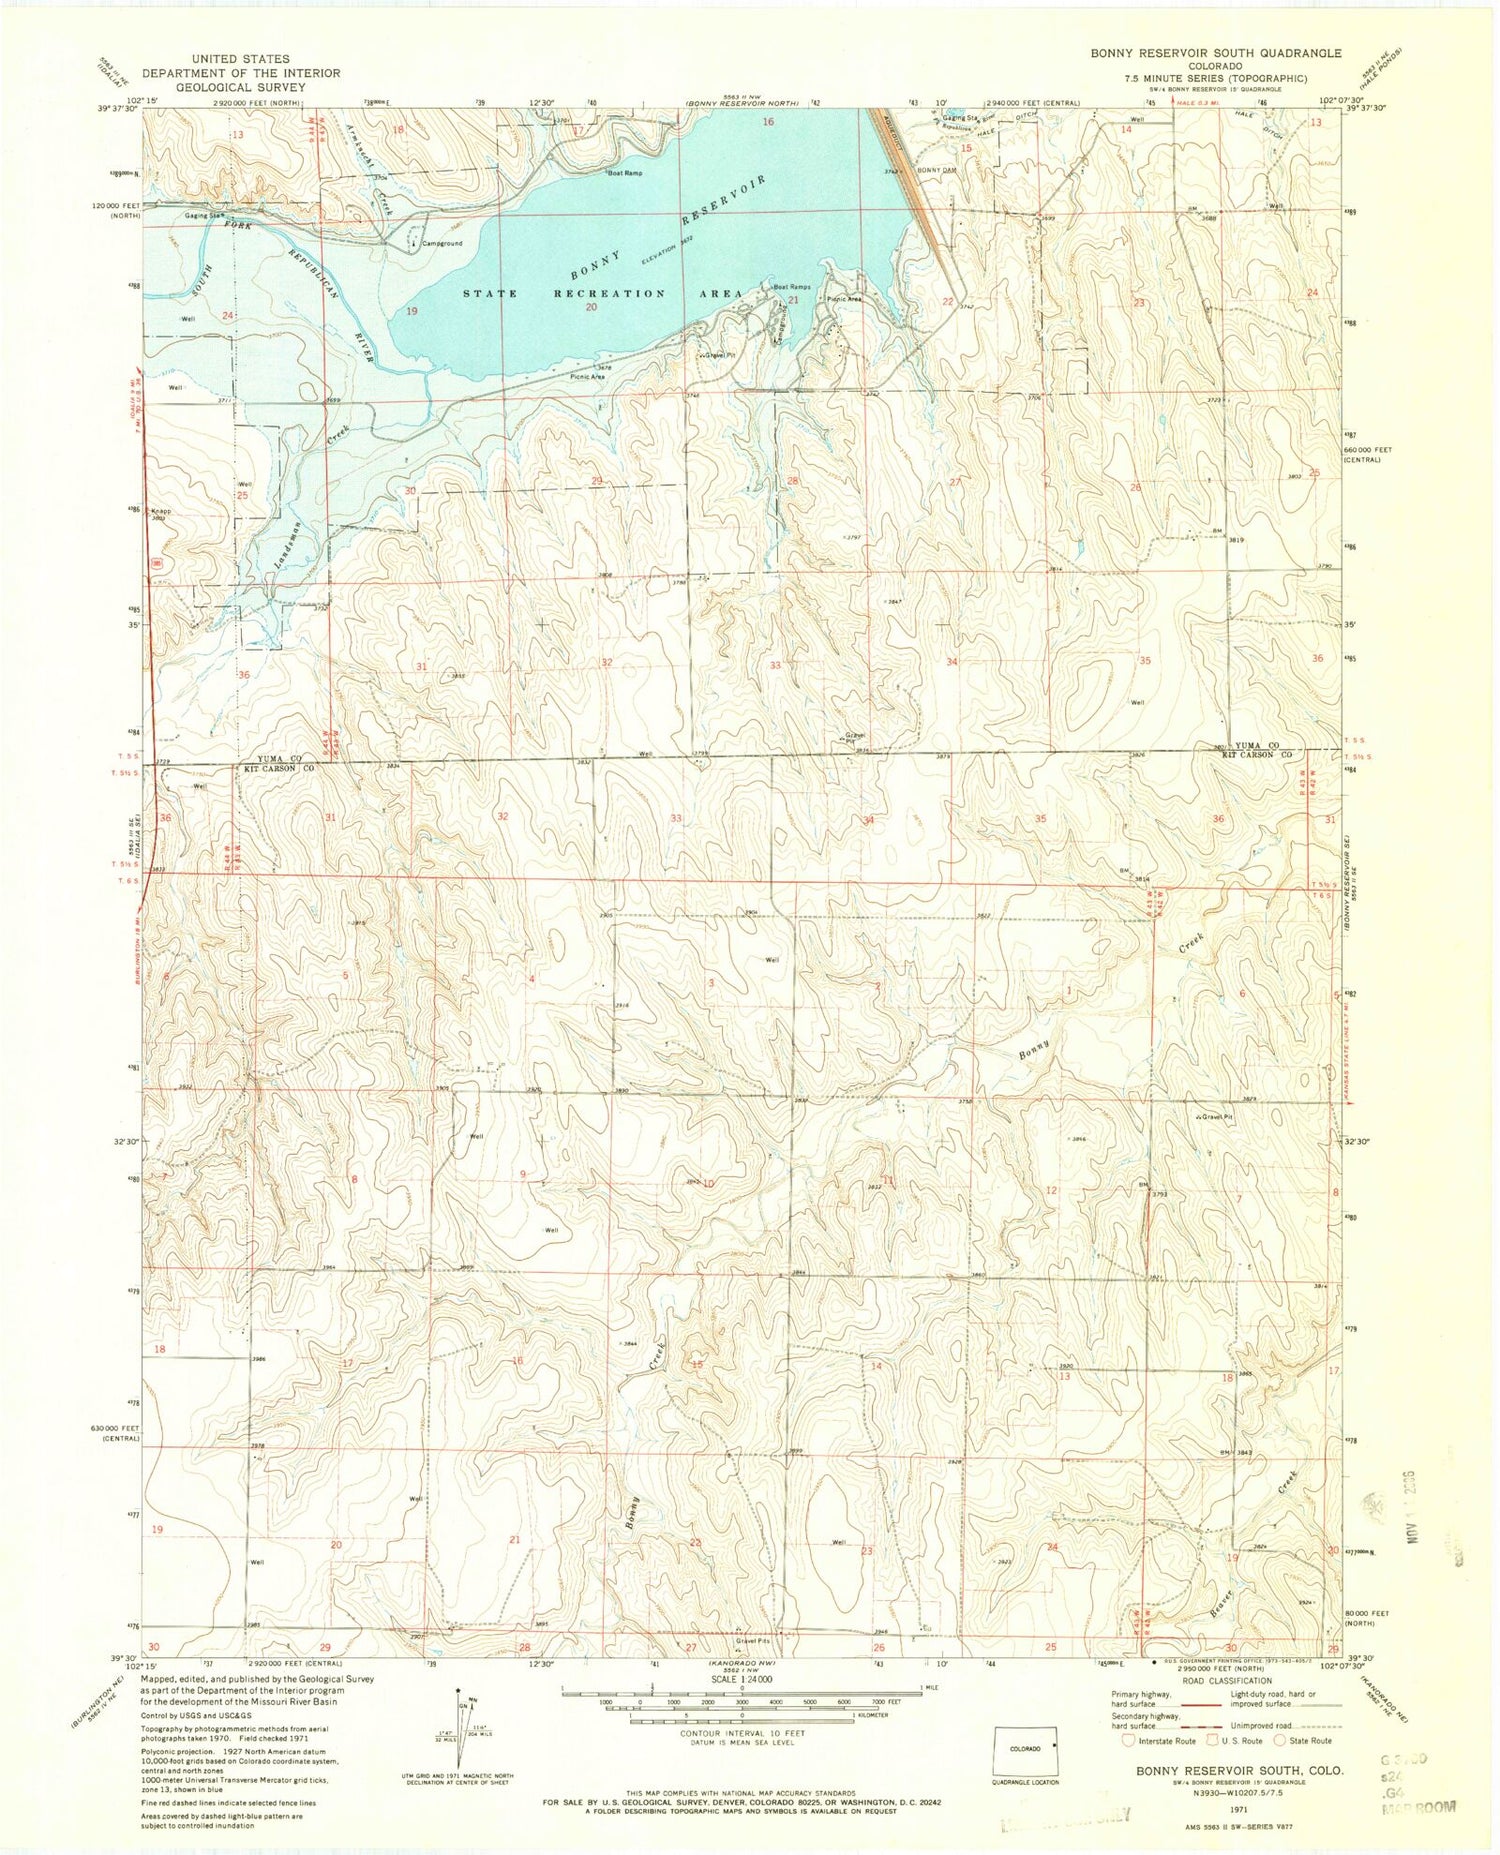 Classic USGS Bonny Reservoir South Colorado 7.5'x7.5' Topo Map Image